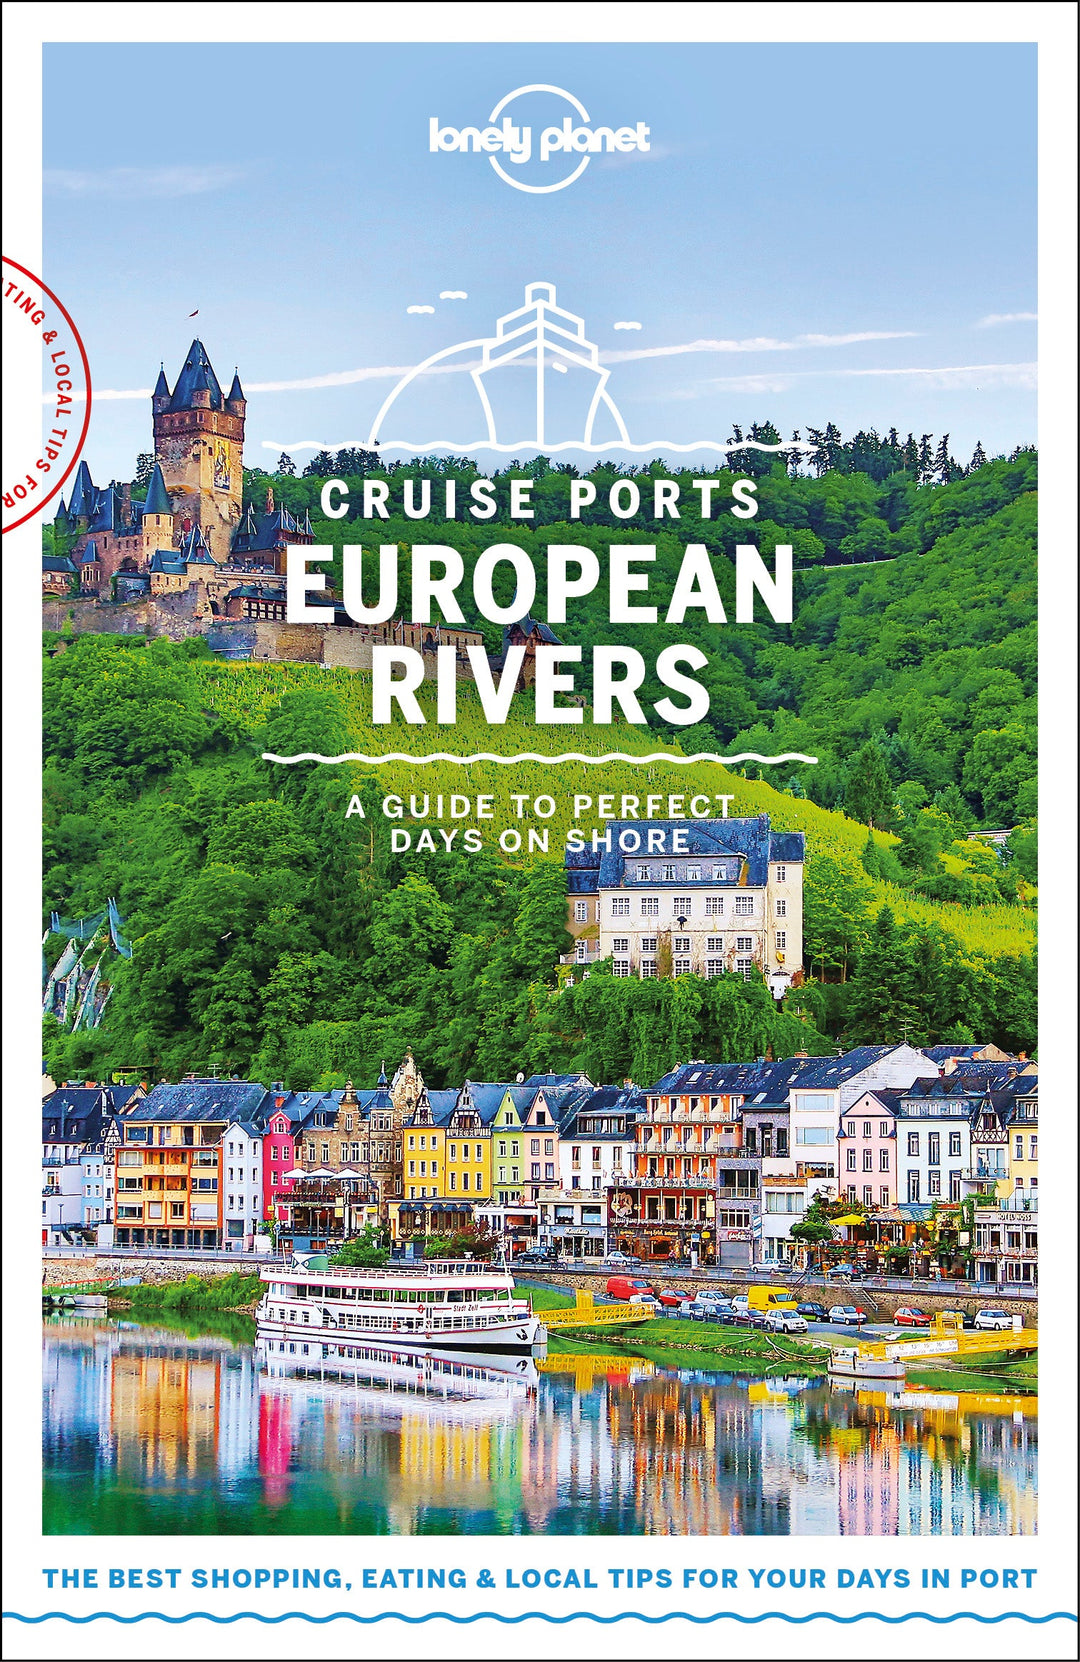 Guide de voyage en croisière en anglais - European Rivers Cruise Ports | Lonely Planet guide de voyage Lonely Planet 